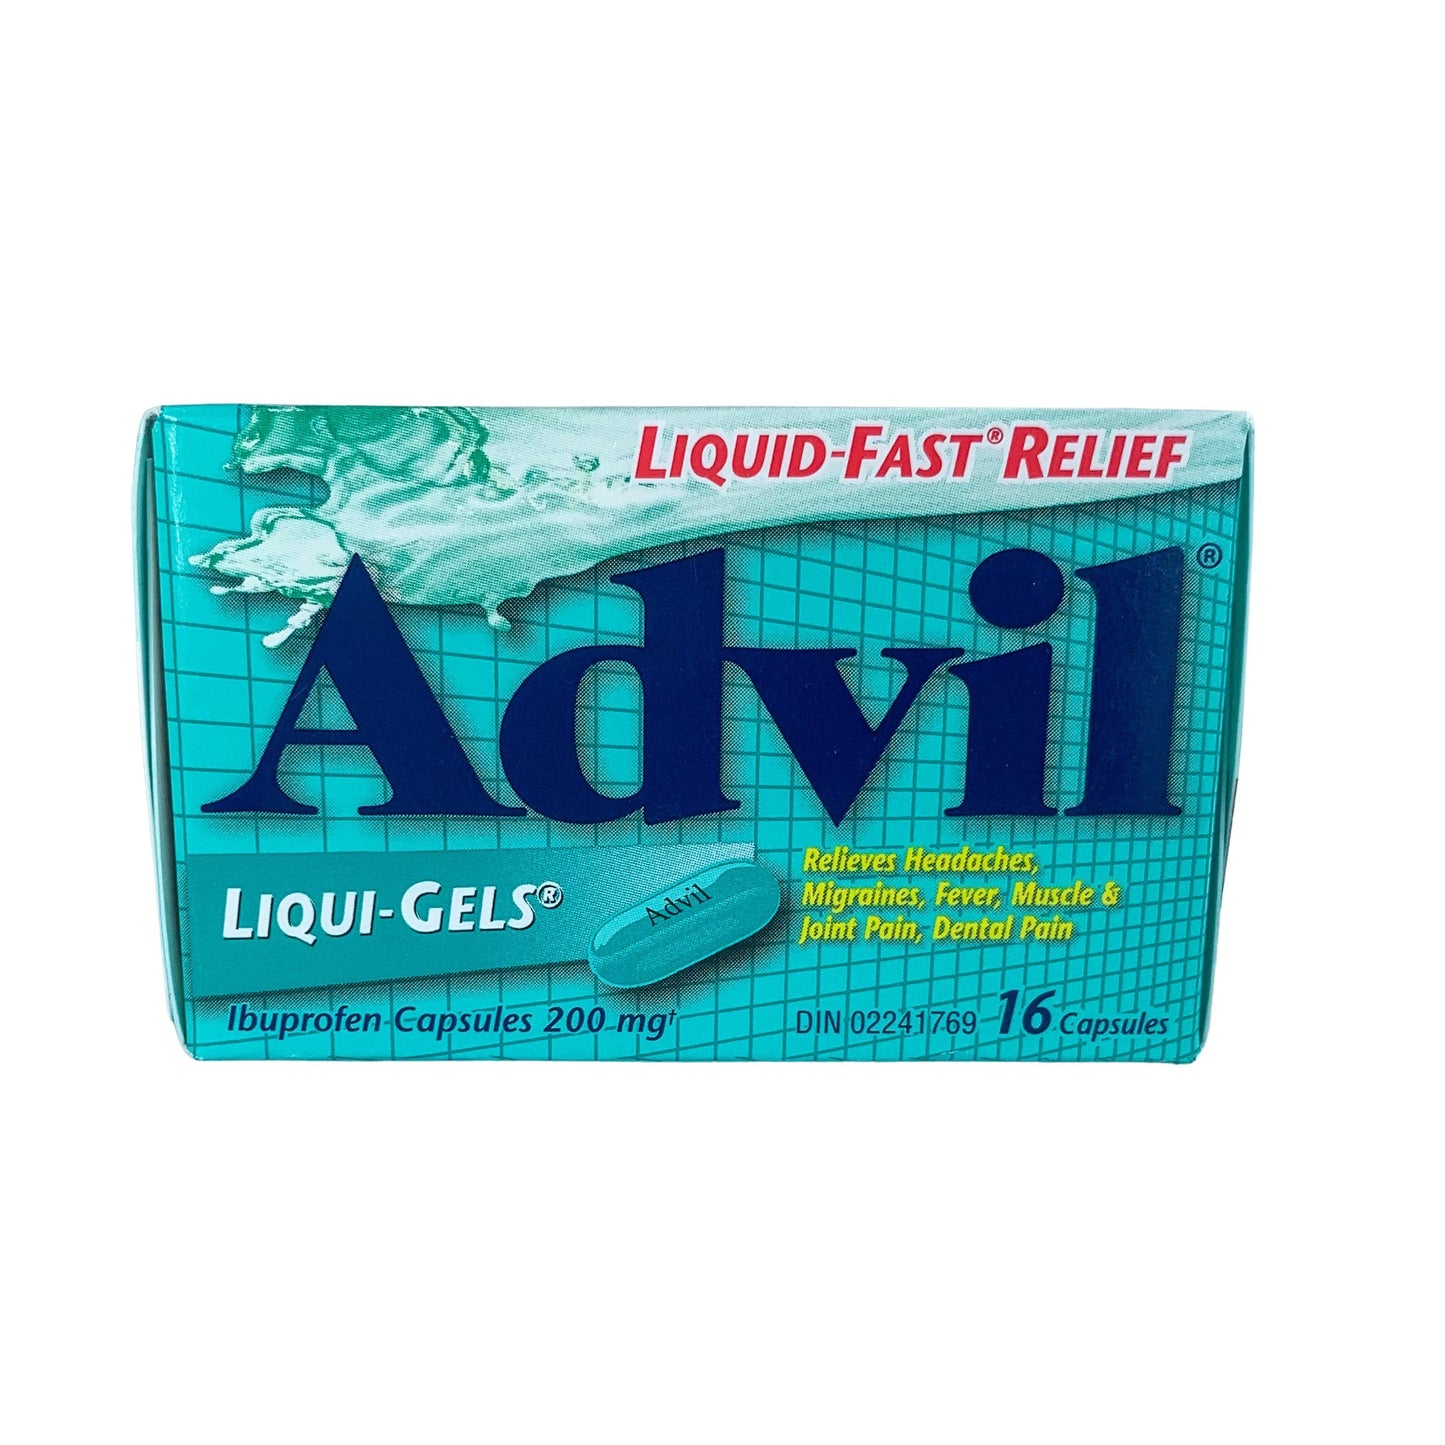 Advil Liquigel Reg 16's 200 mg